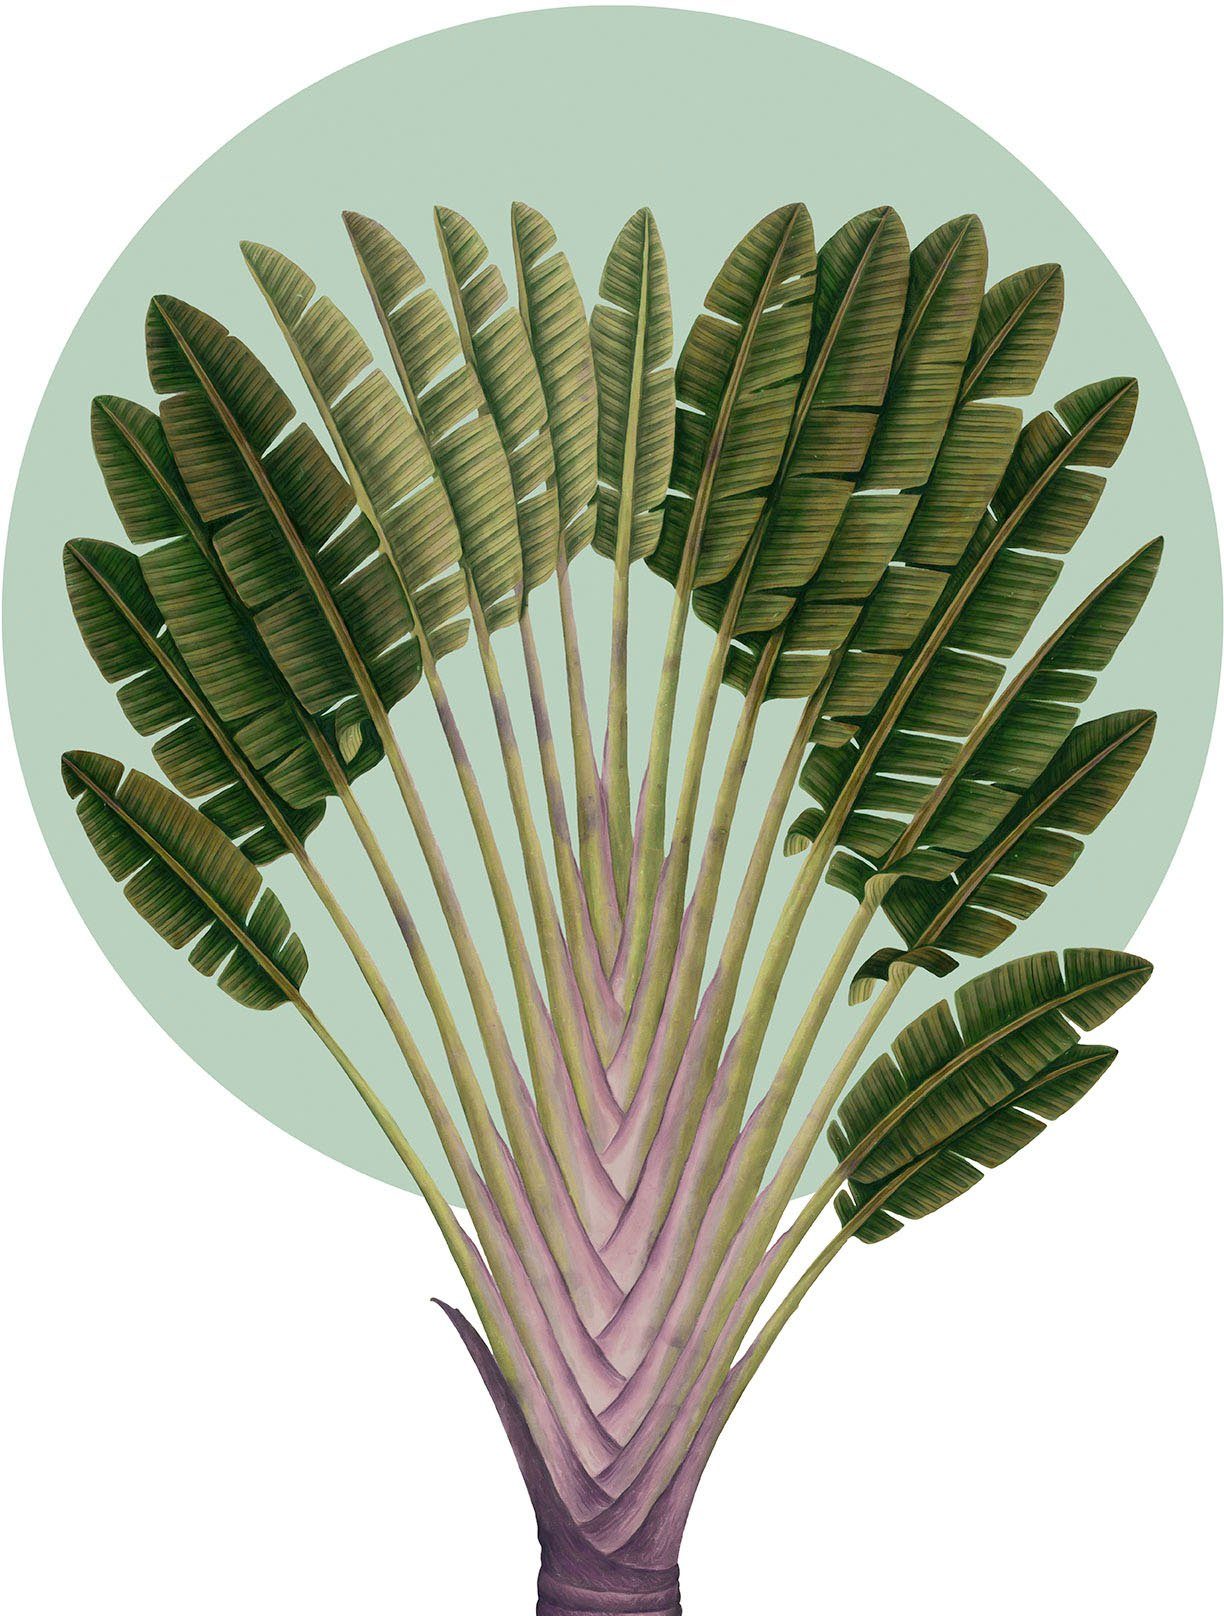 Komar Artprint Botanical Garden Pinnate Palm